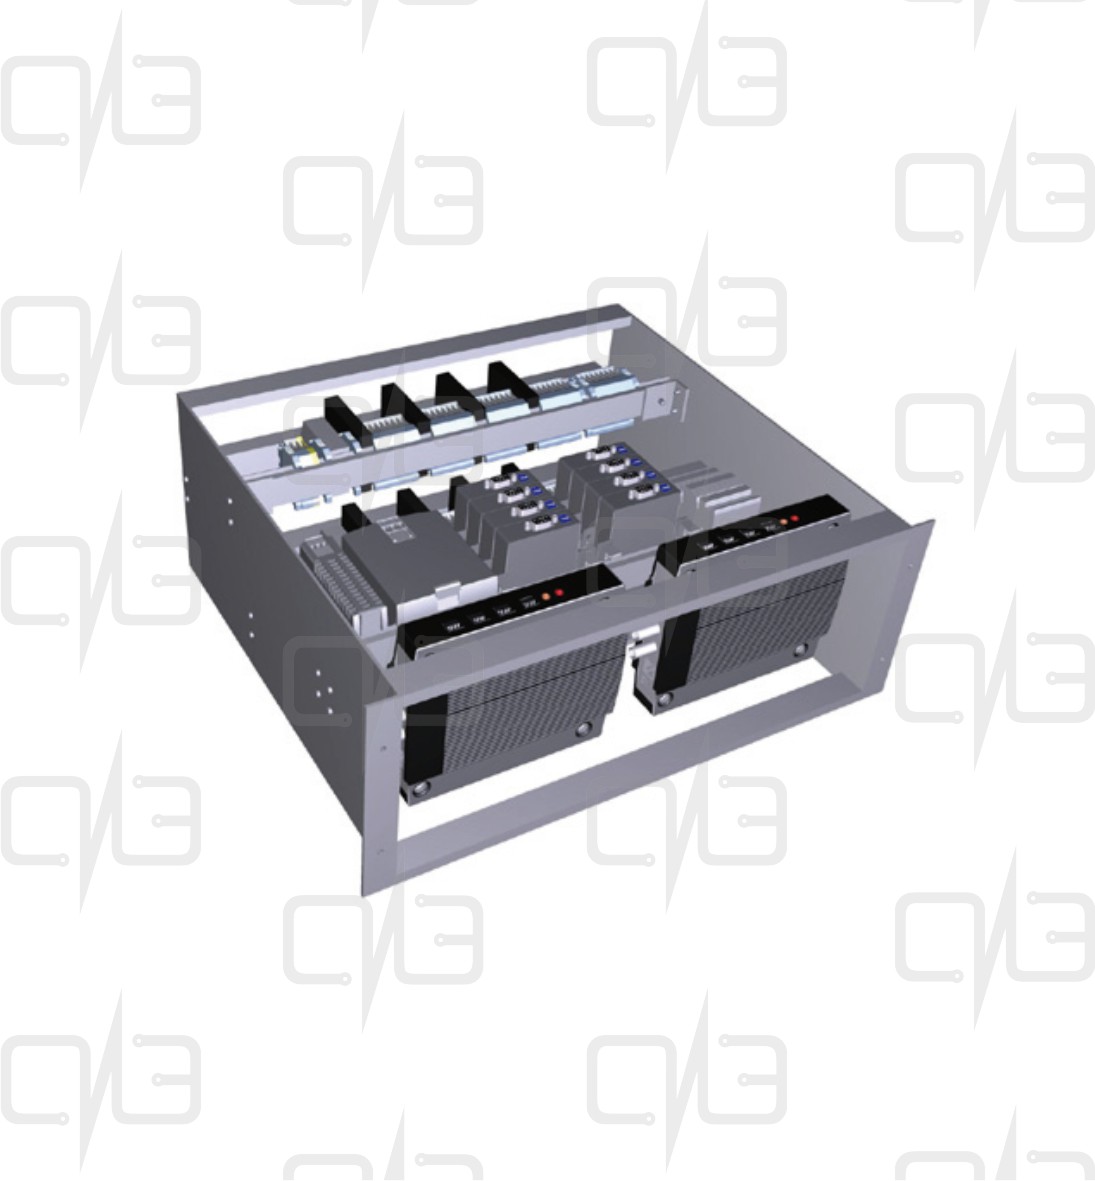 T05-Q2-00-110 Connection Rack - Q2 Видеосервер с источником питания и точкой доступа Ethernet